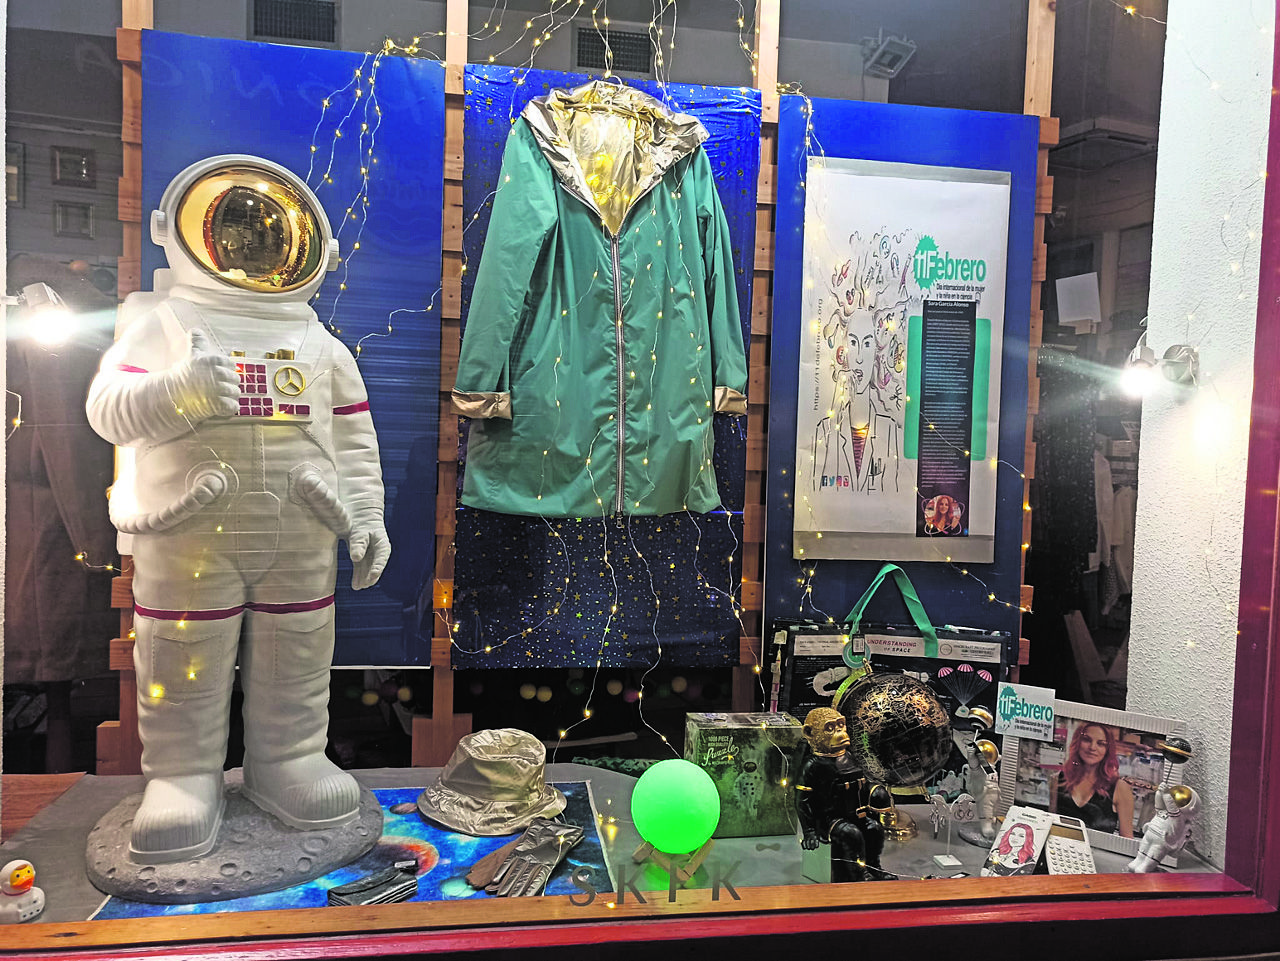 El traje de astronauta y otros objetos "propios" del oficio en el escaparate dedicado a la leonesa Sara García Alonso en la tienda de Cascanueces.